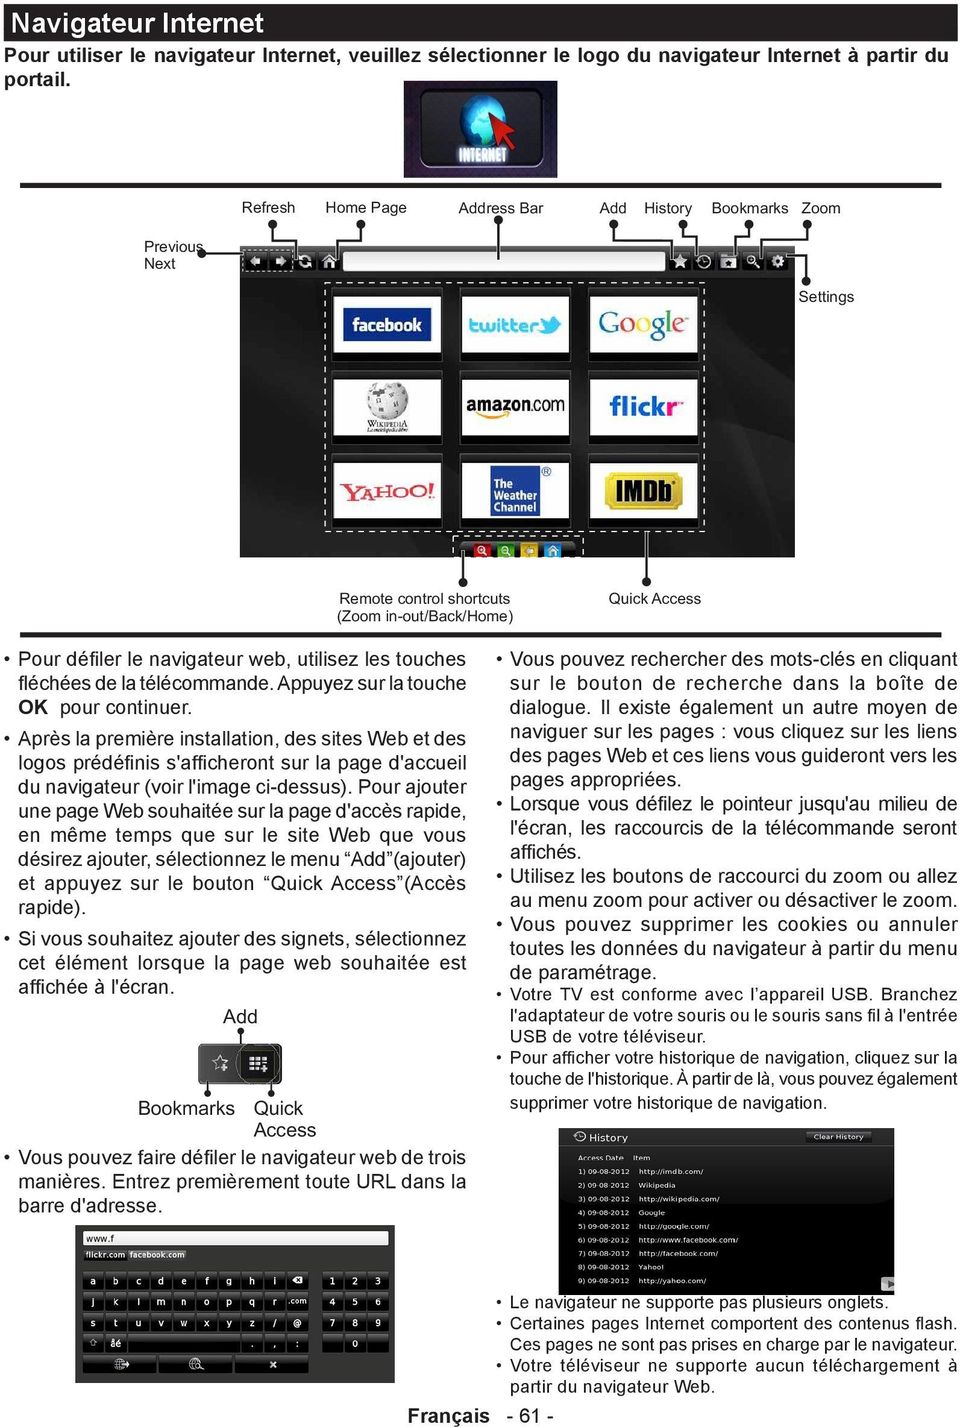 Après la première installation, des sites Web et des logos prédéfinis s'afficheront sur la page d'accueil du navigateur (voir l'image ci-dessus).